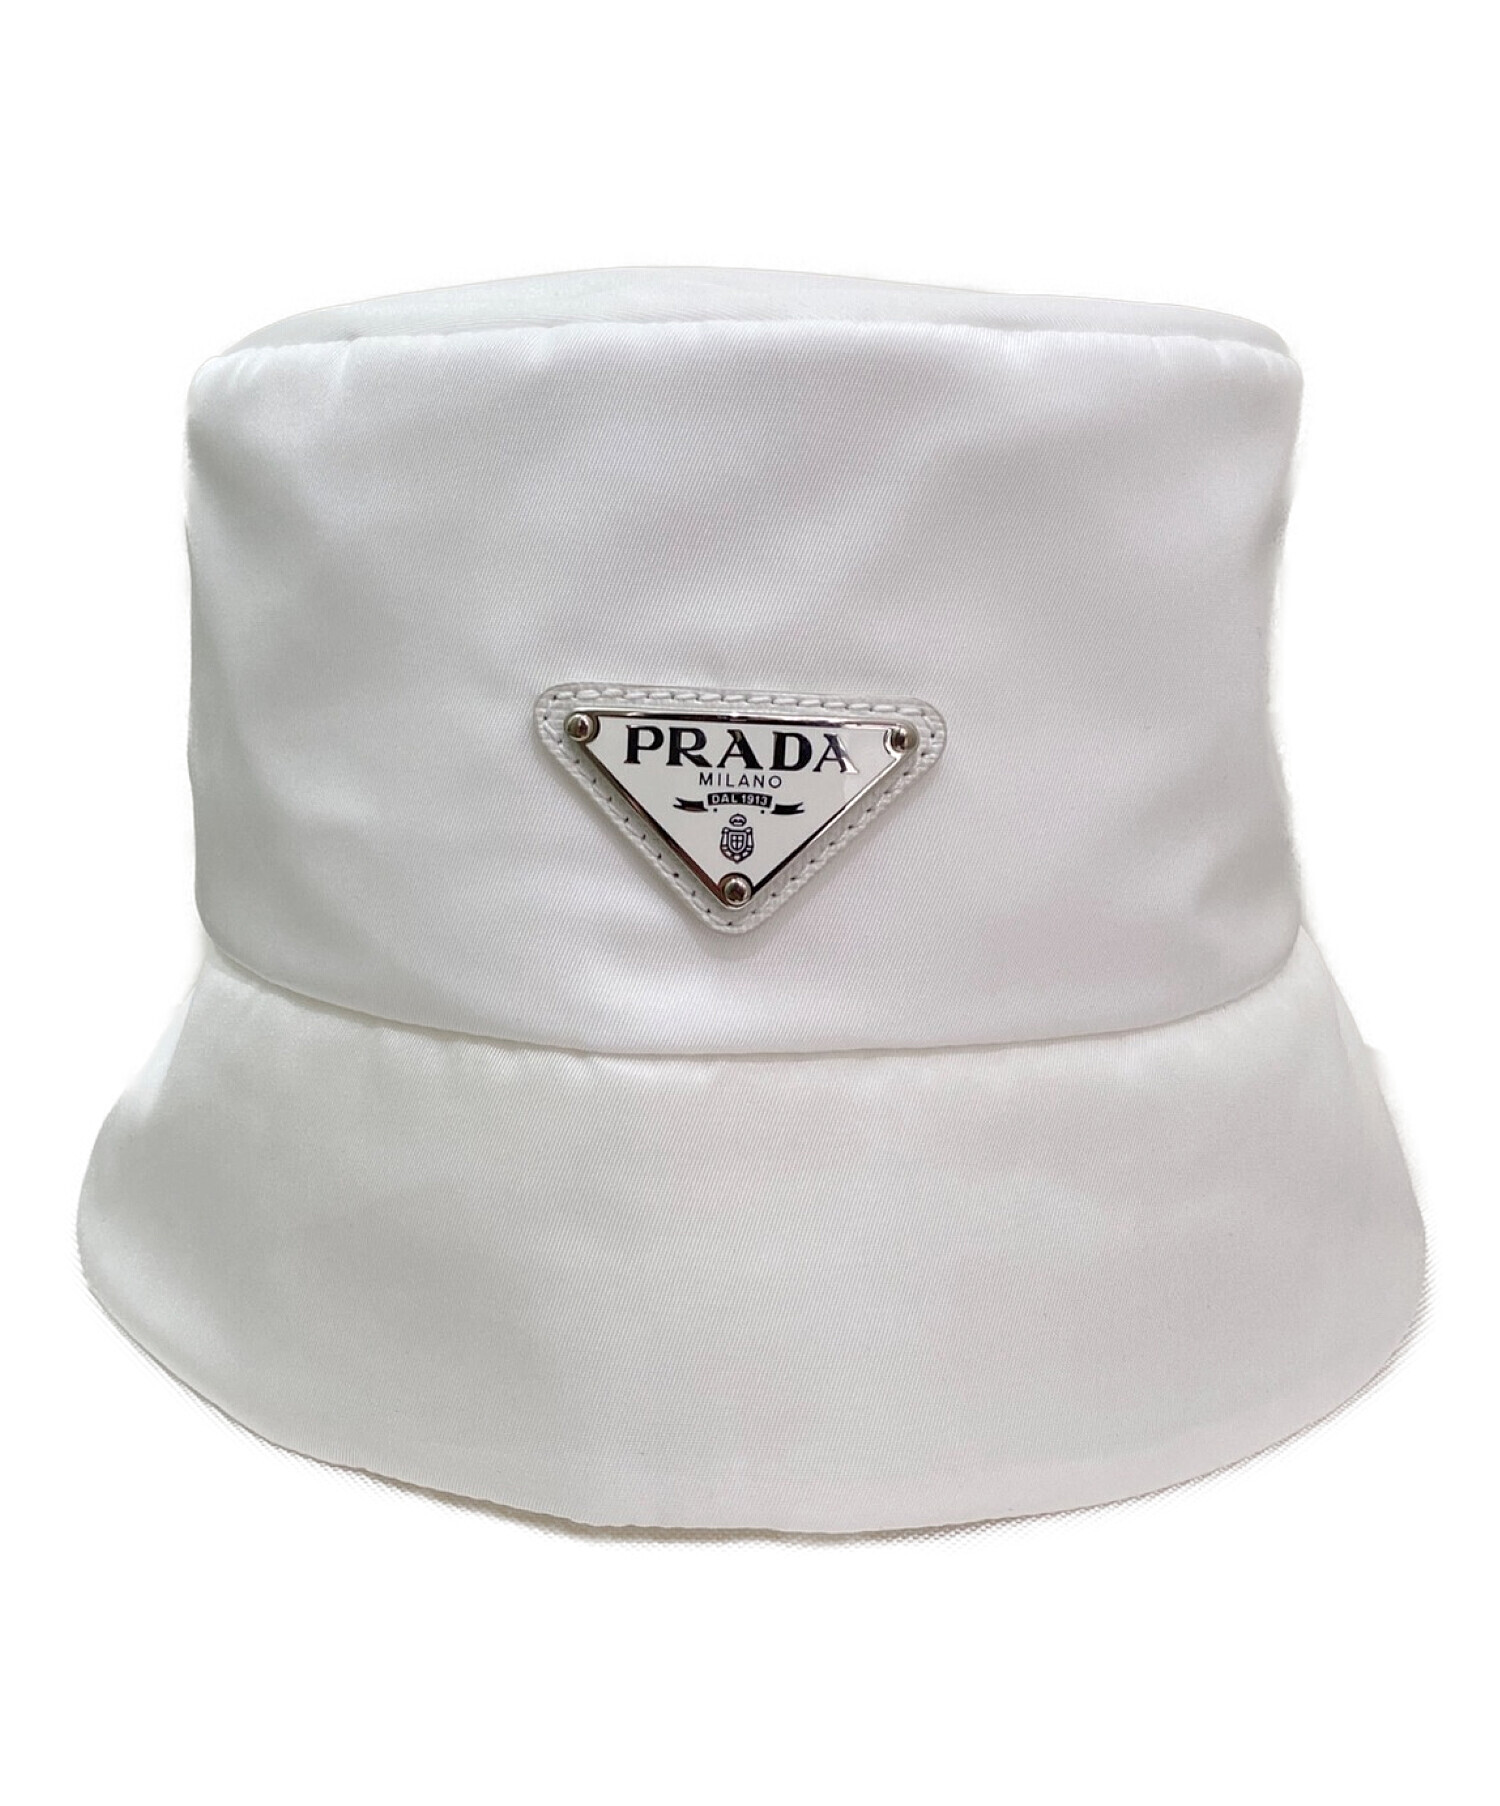 PRADA×adidas (プラダ × アディダス) Re-Nylon バケットハット ホワイト サイズ:54-57cm